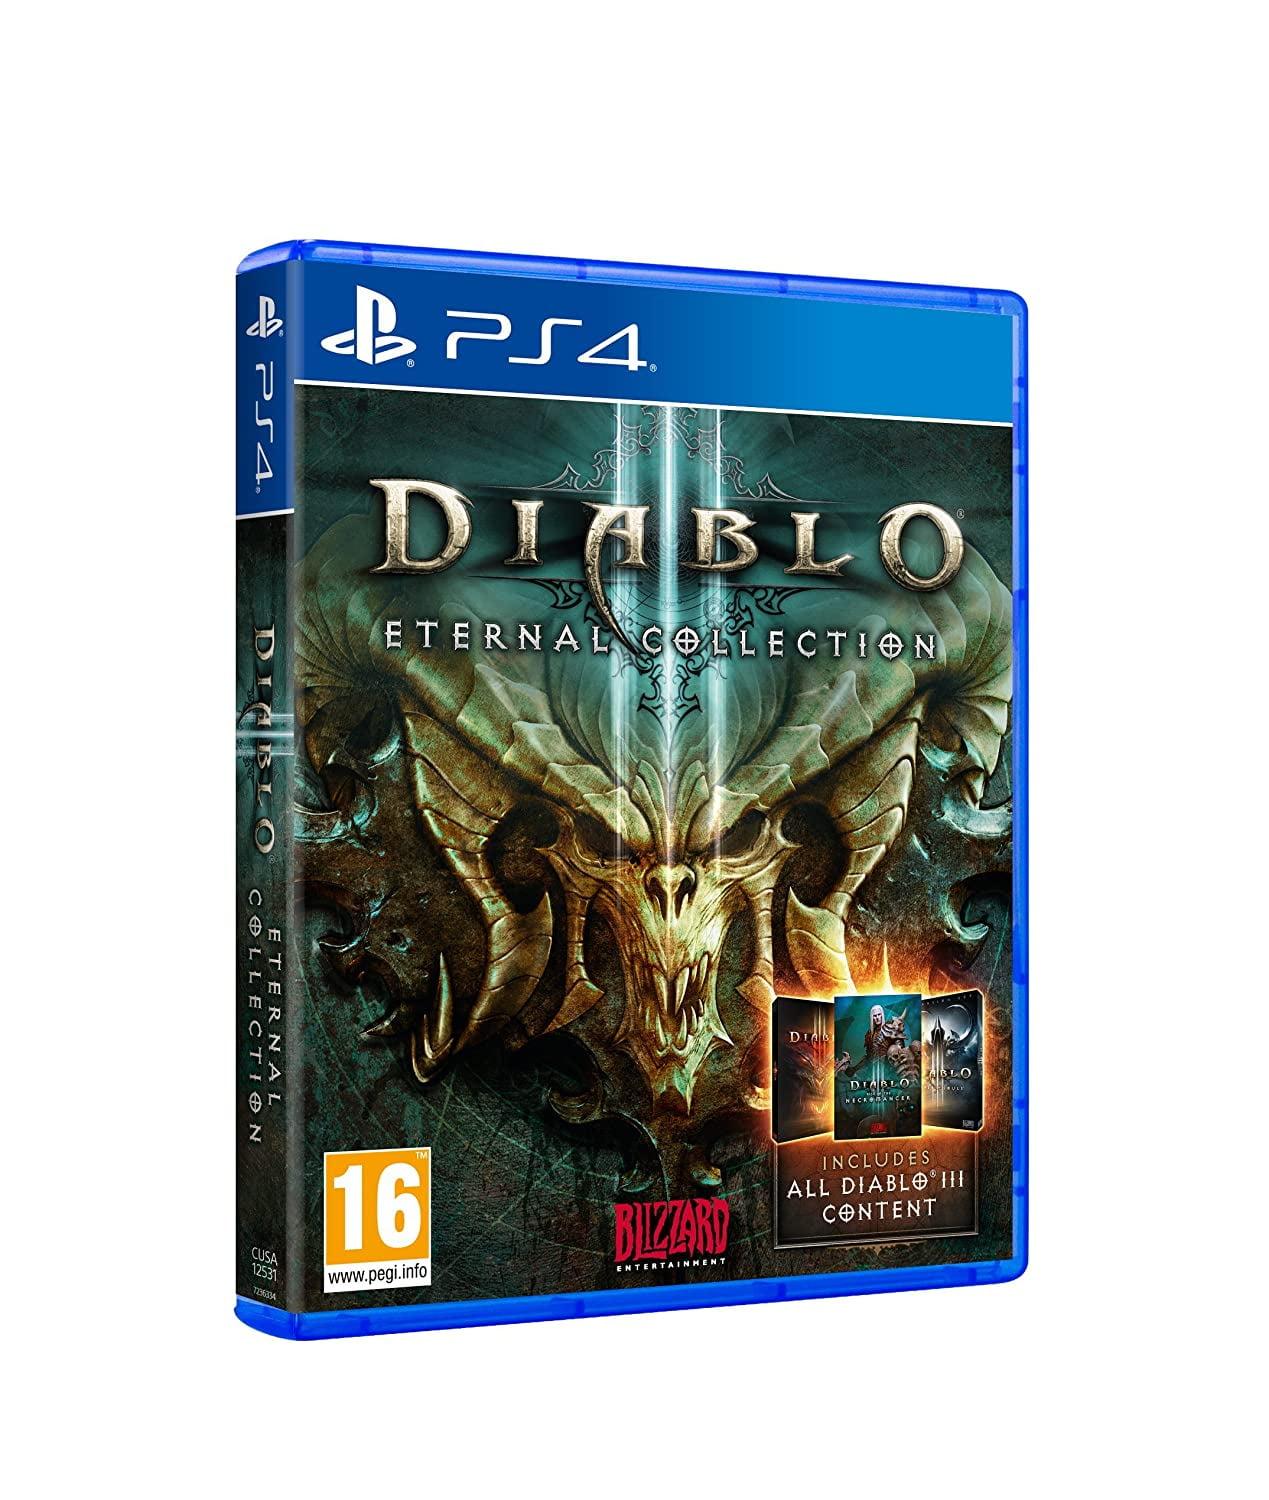 Диабло 3 пс 3. Diablo 3 Eternal collection ps4. Diablo 3 Eternal collection ps4 обложка. Диск Diablo на ПС 4. Диабло 3 на пс4.